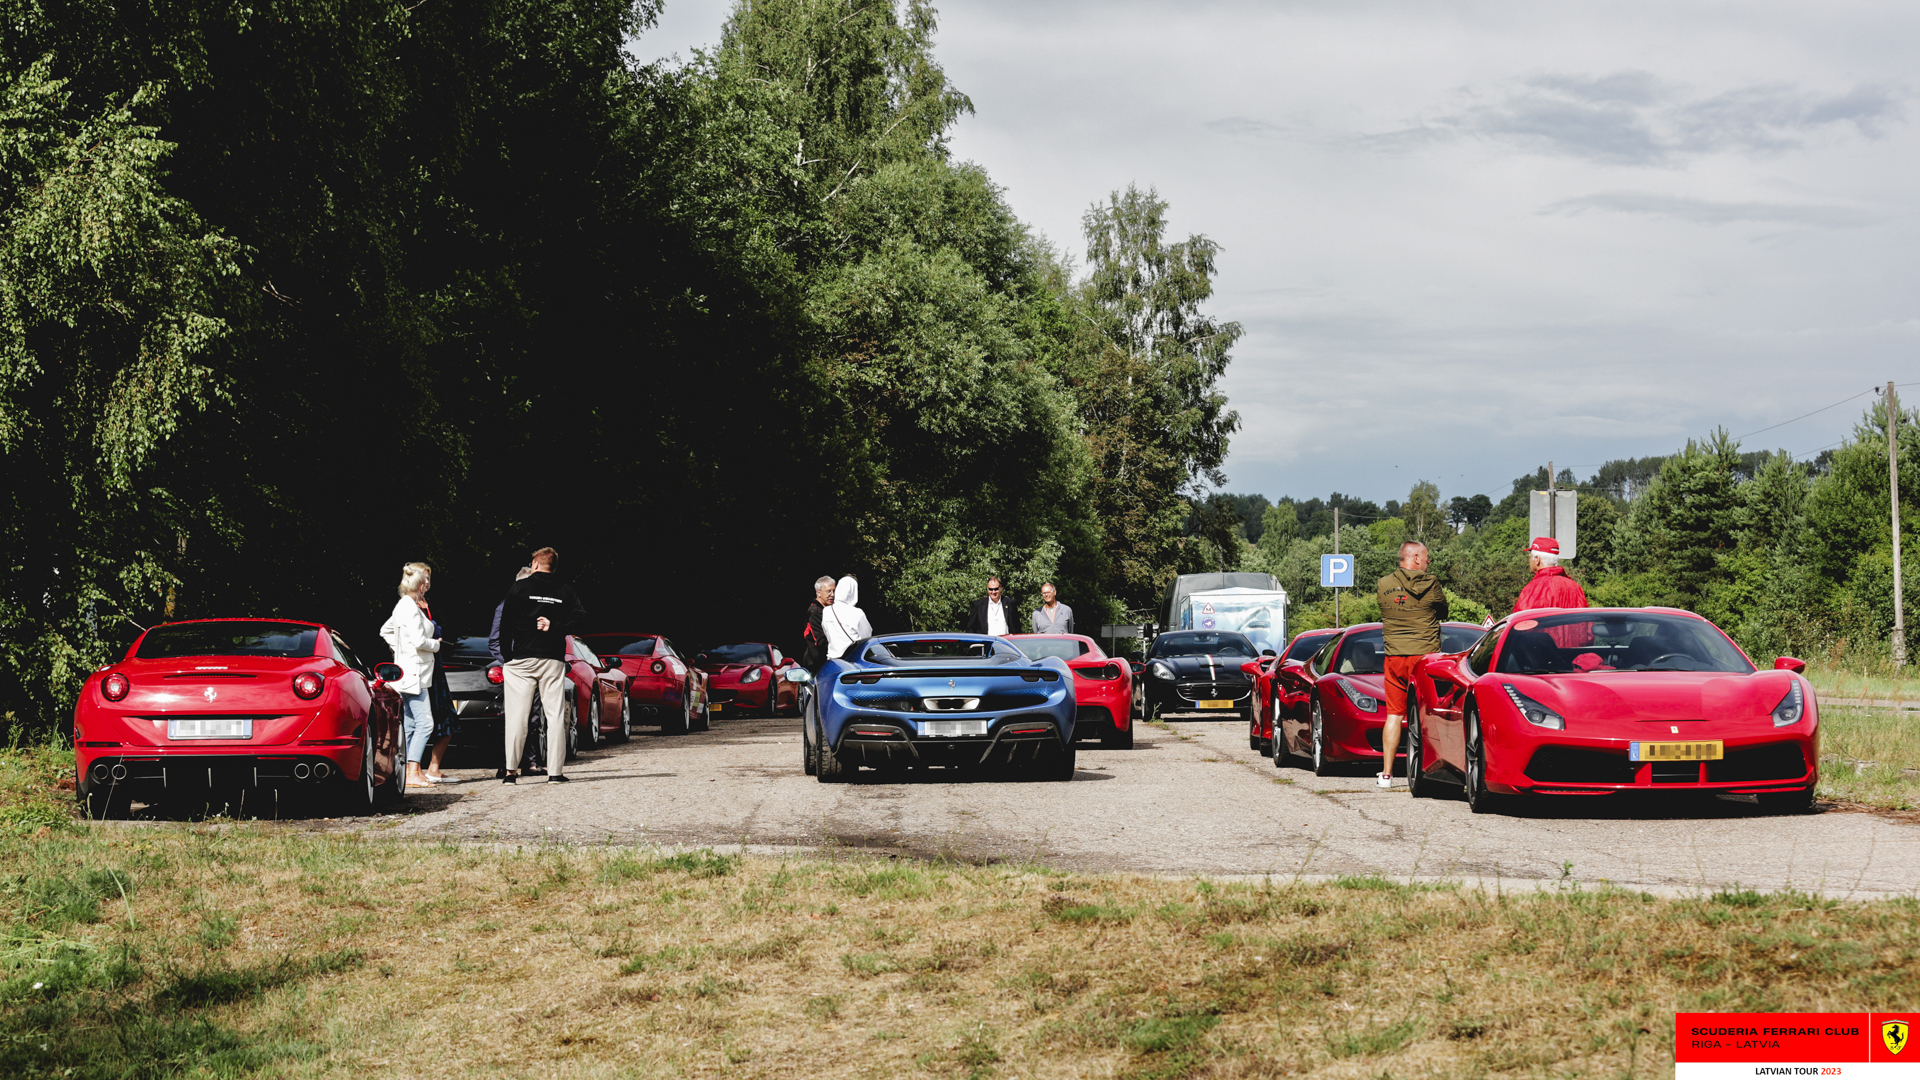 The parking of Razna pearl full of Ferraris. 